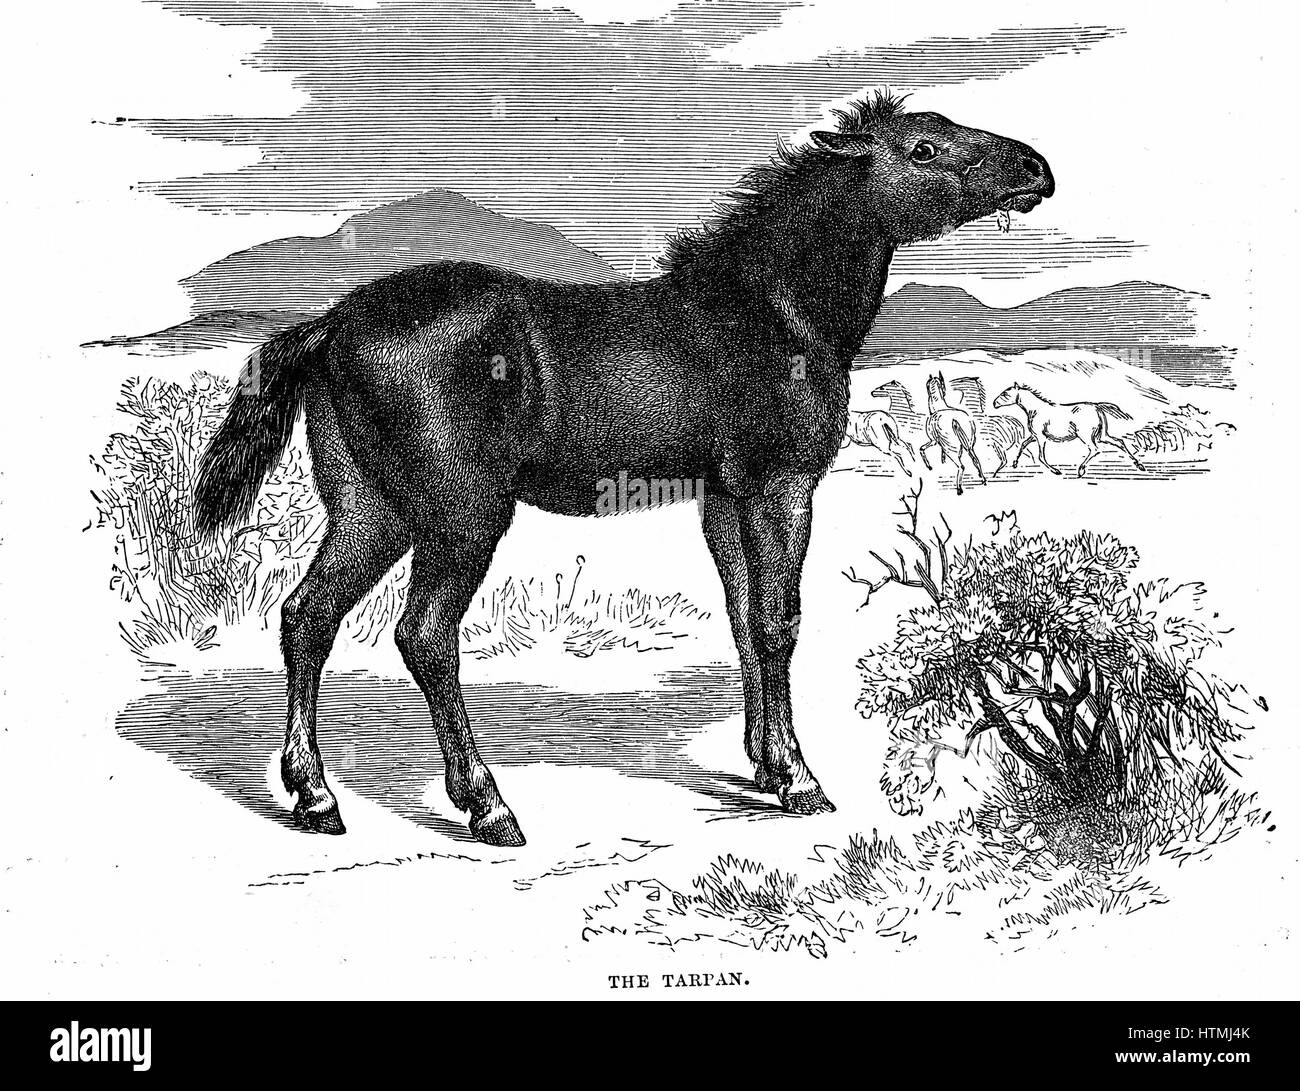 Tarpan, el caballo salvaje prehistórico que se extinguió a fines del 1800. Creación genética moderna hecha en 1930 utilizando razas de pony con Tarpan ascendencia. Grabado en madera de 1884. Foto de stock